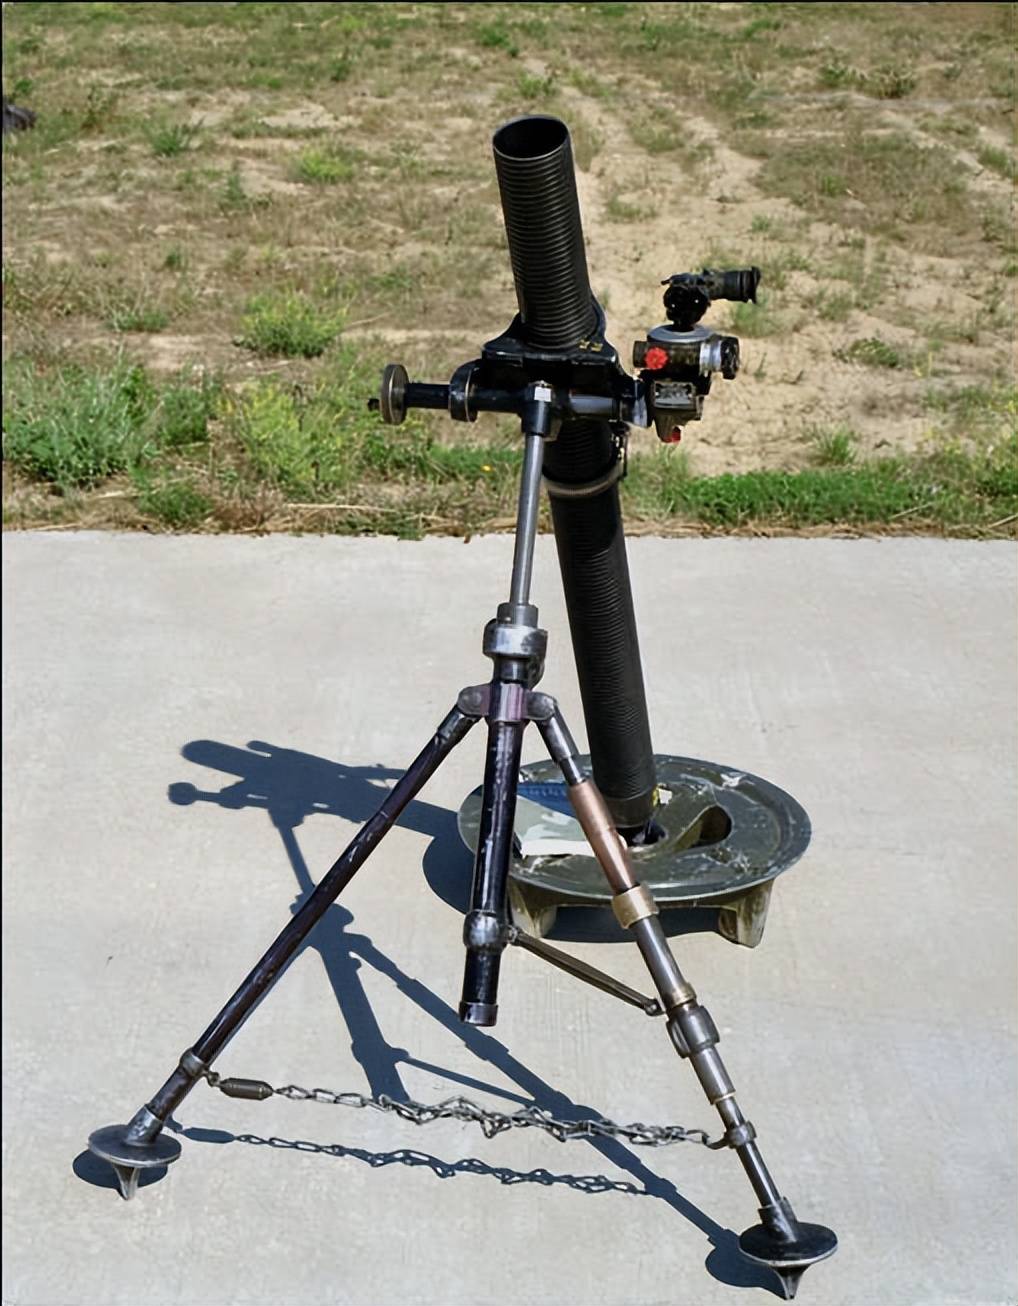 m29迫击炮是美国生产的81毫米迫击炮